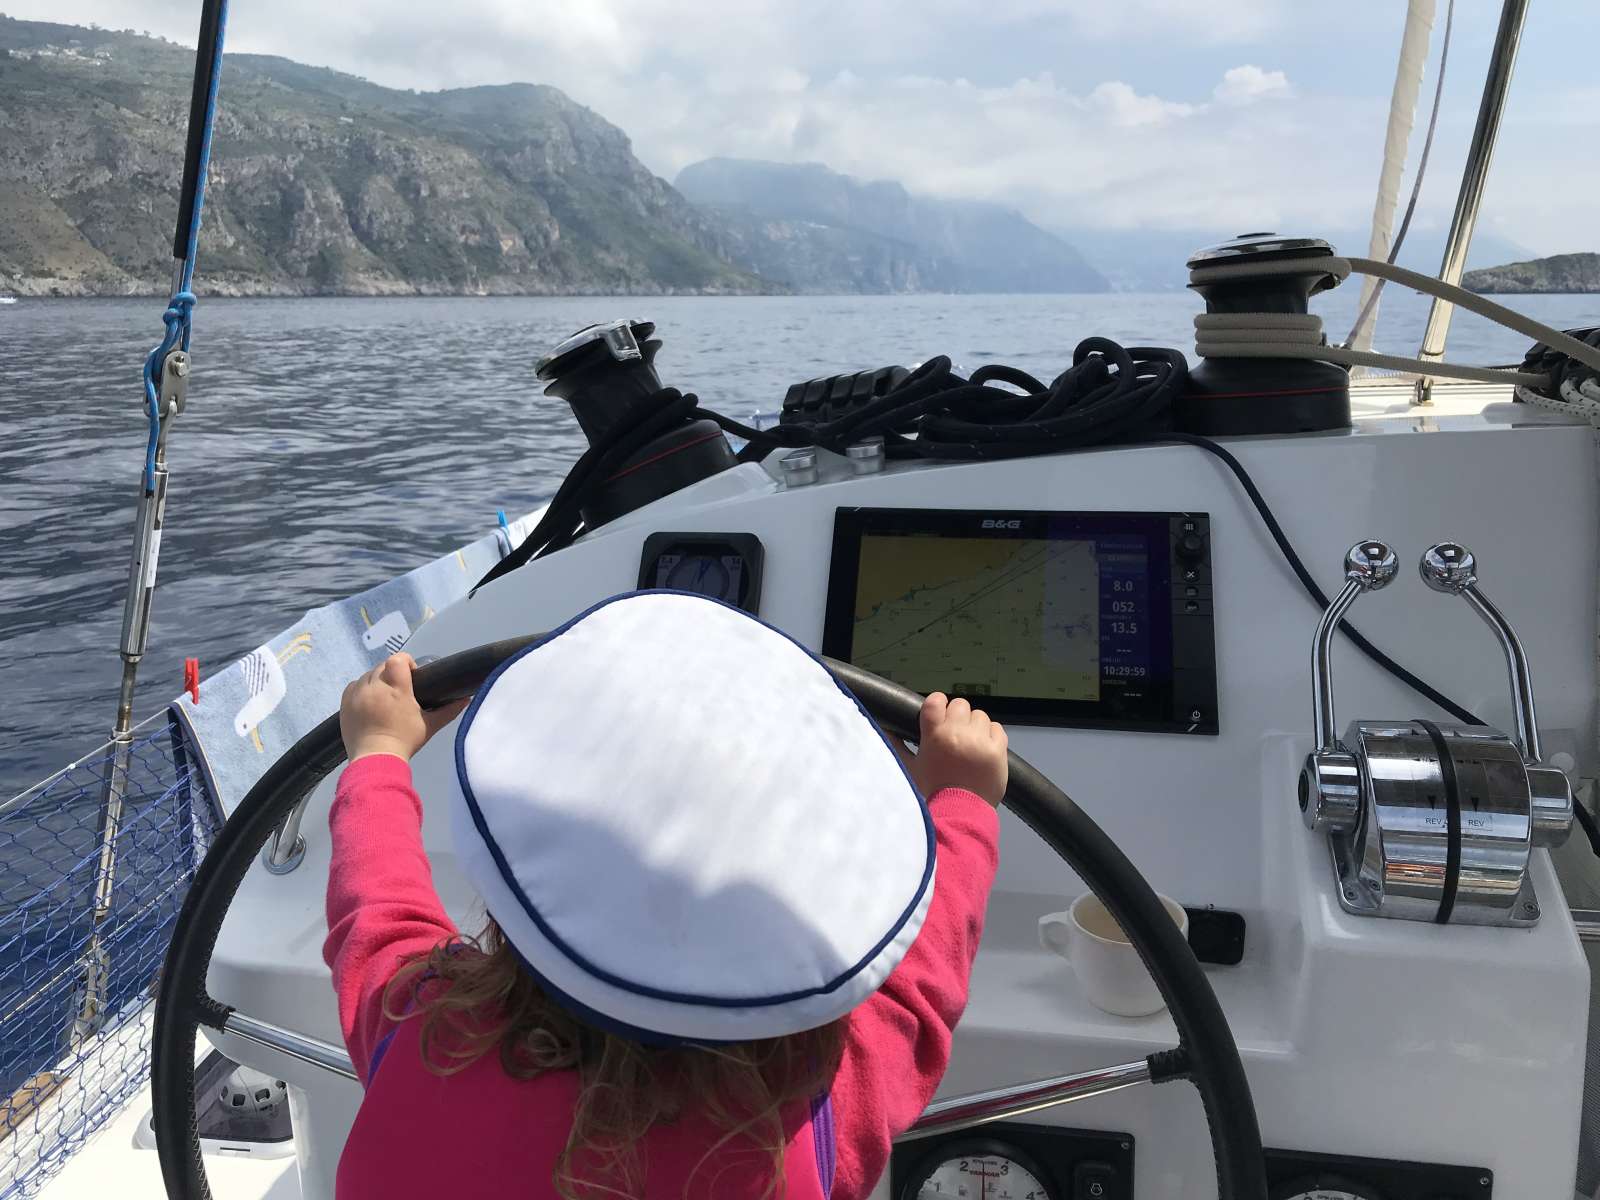 Sailing the Amalfi coast with PlainSailing.com